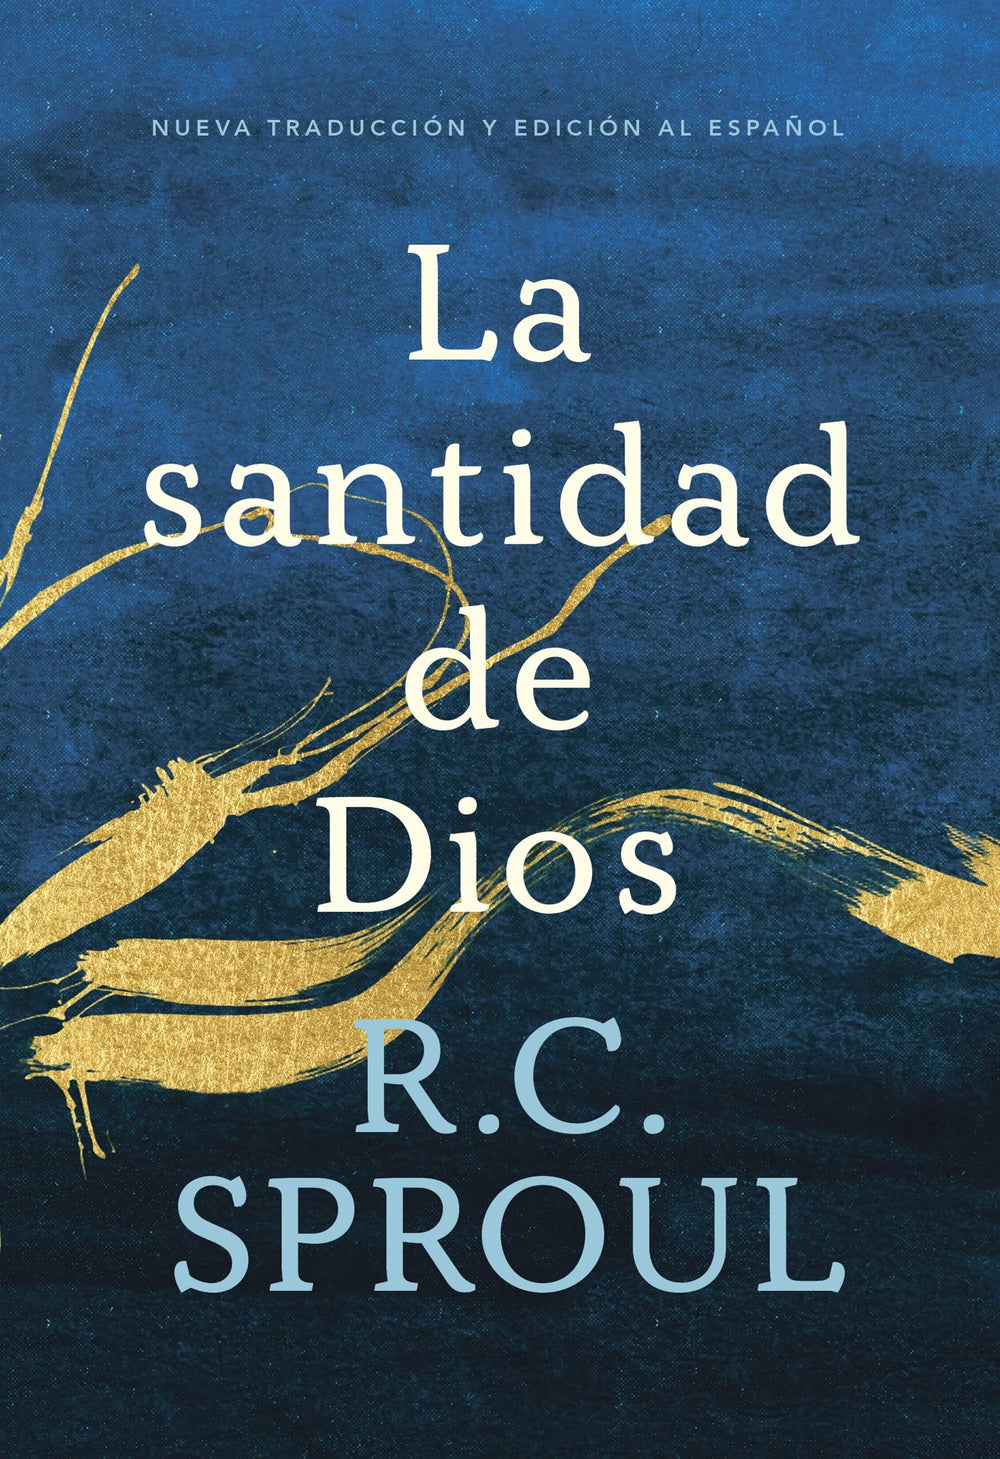 La santidad de Dios-R.C. Sproul - Pura Vida Books